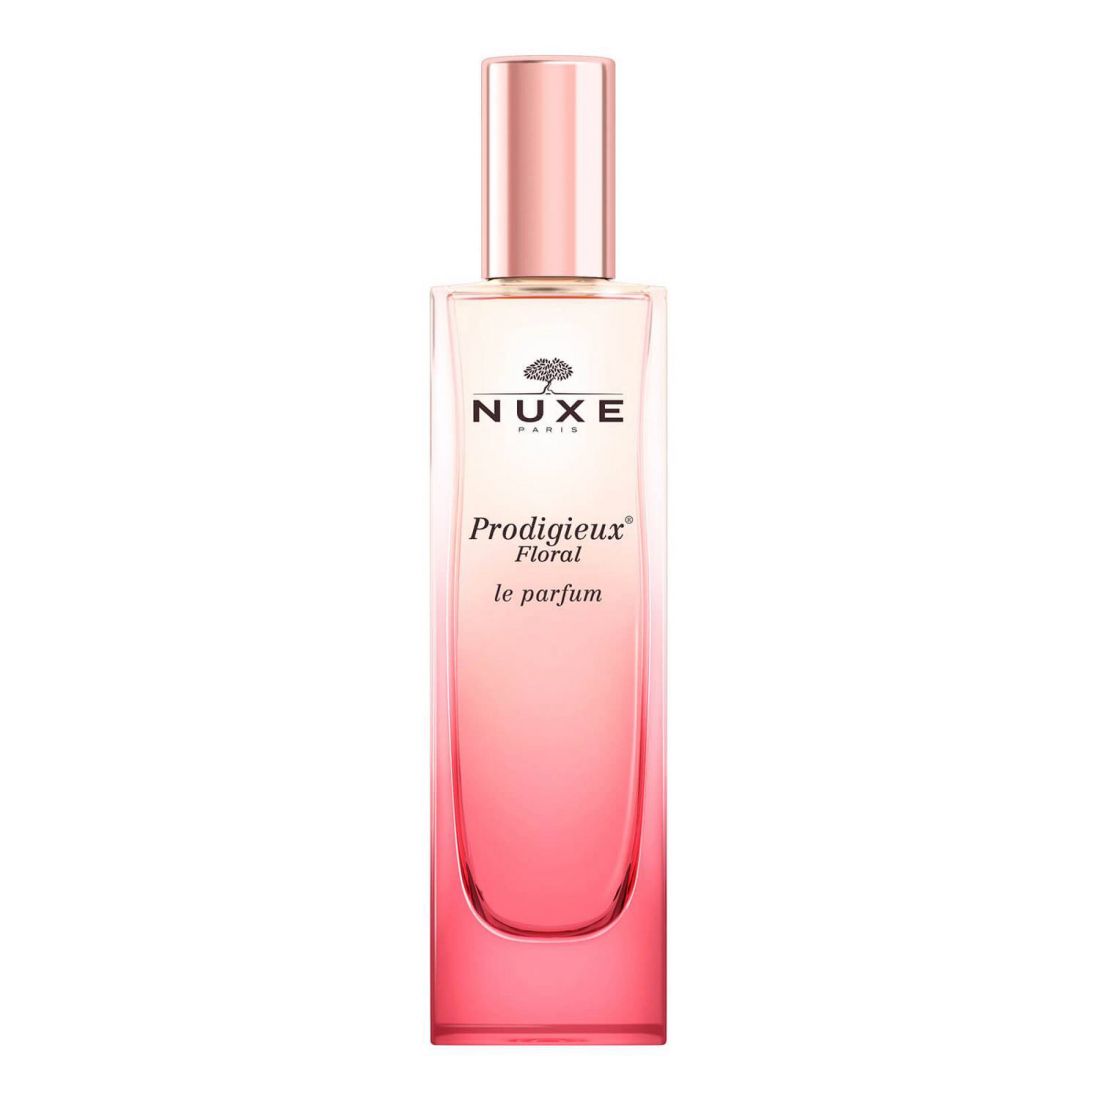 Nuxe - Eau de parfum 'Prodigieux® Floral' - 50 ml